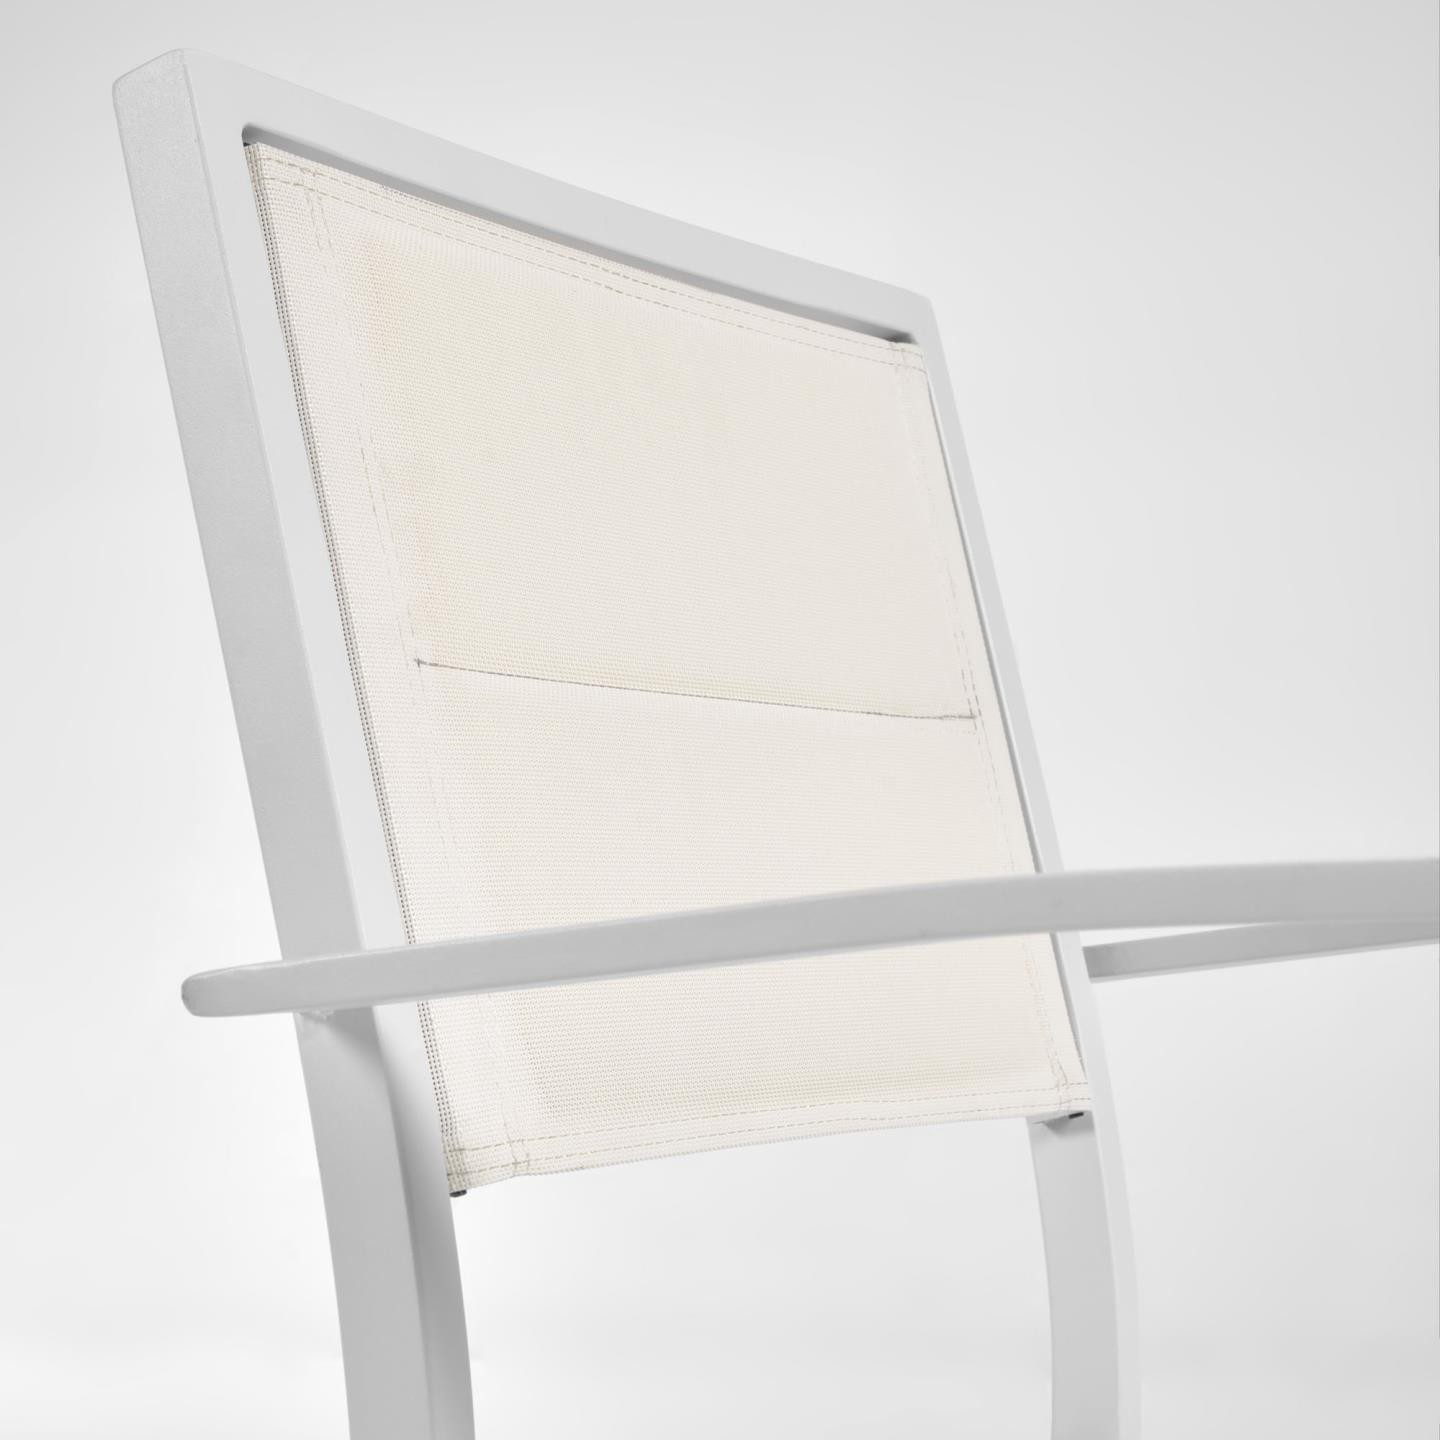 Krzesło Sirley, białe